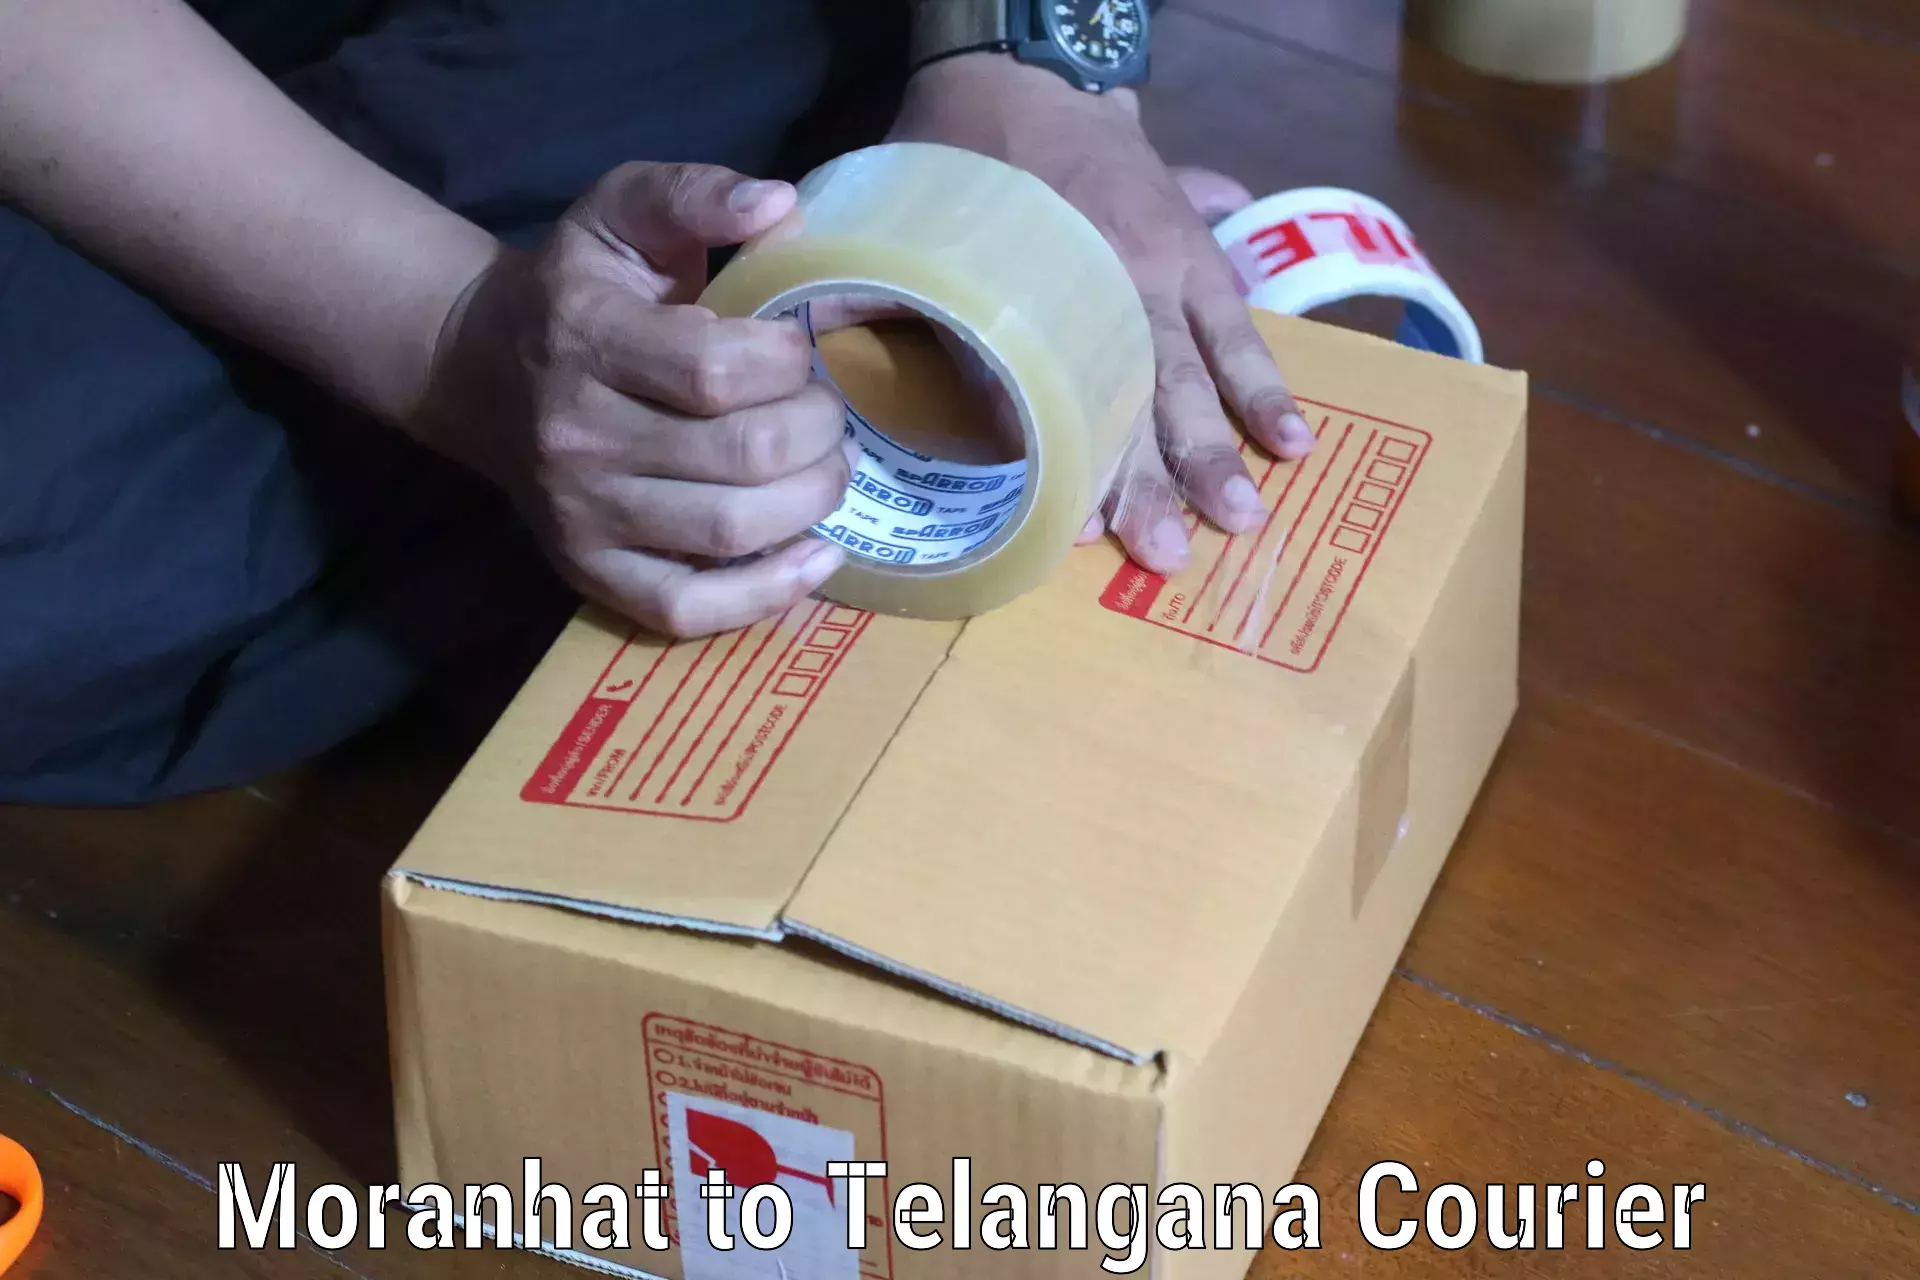 Courier insurance Moranhat to Telangana